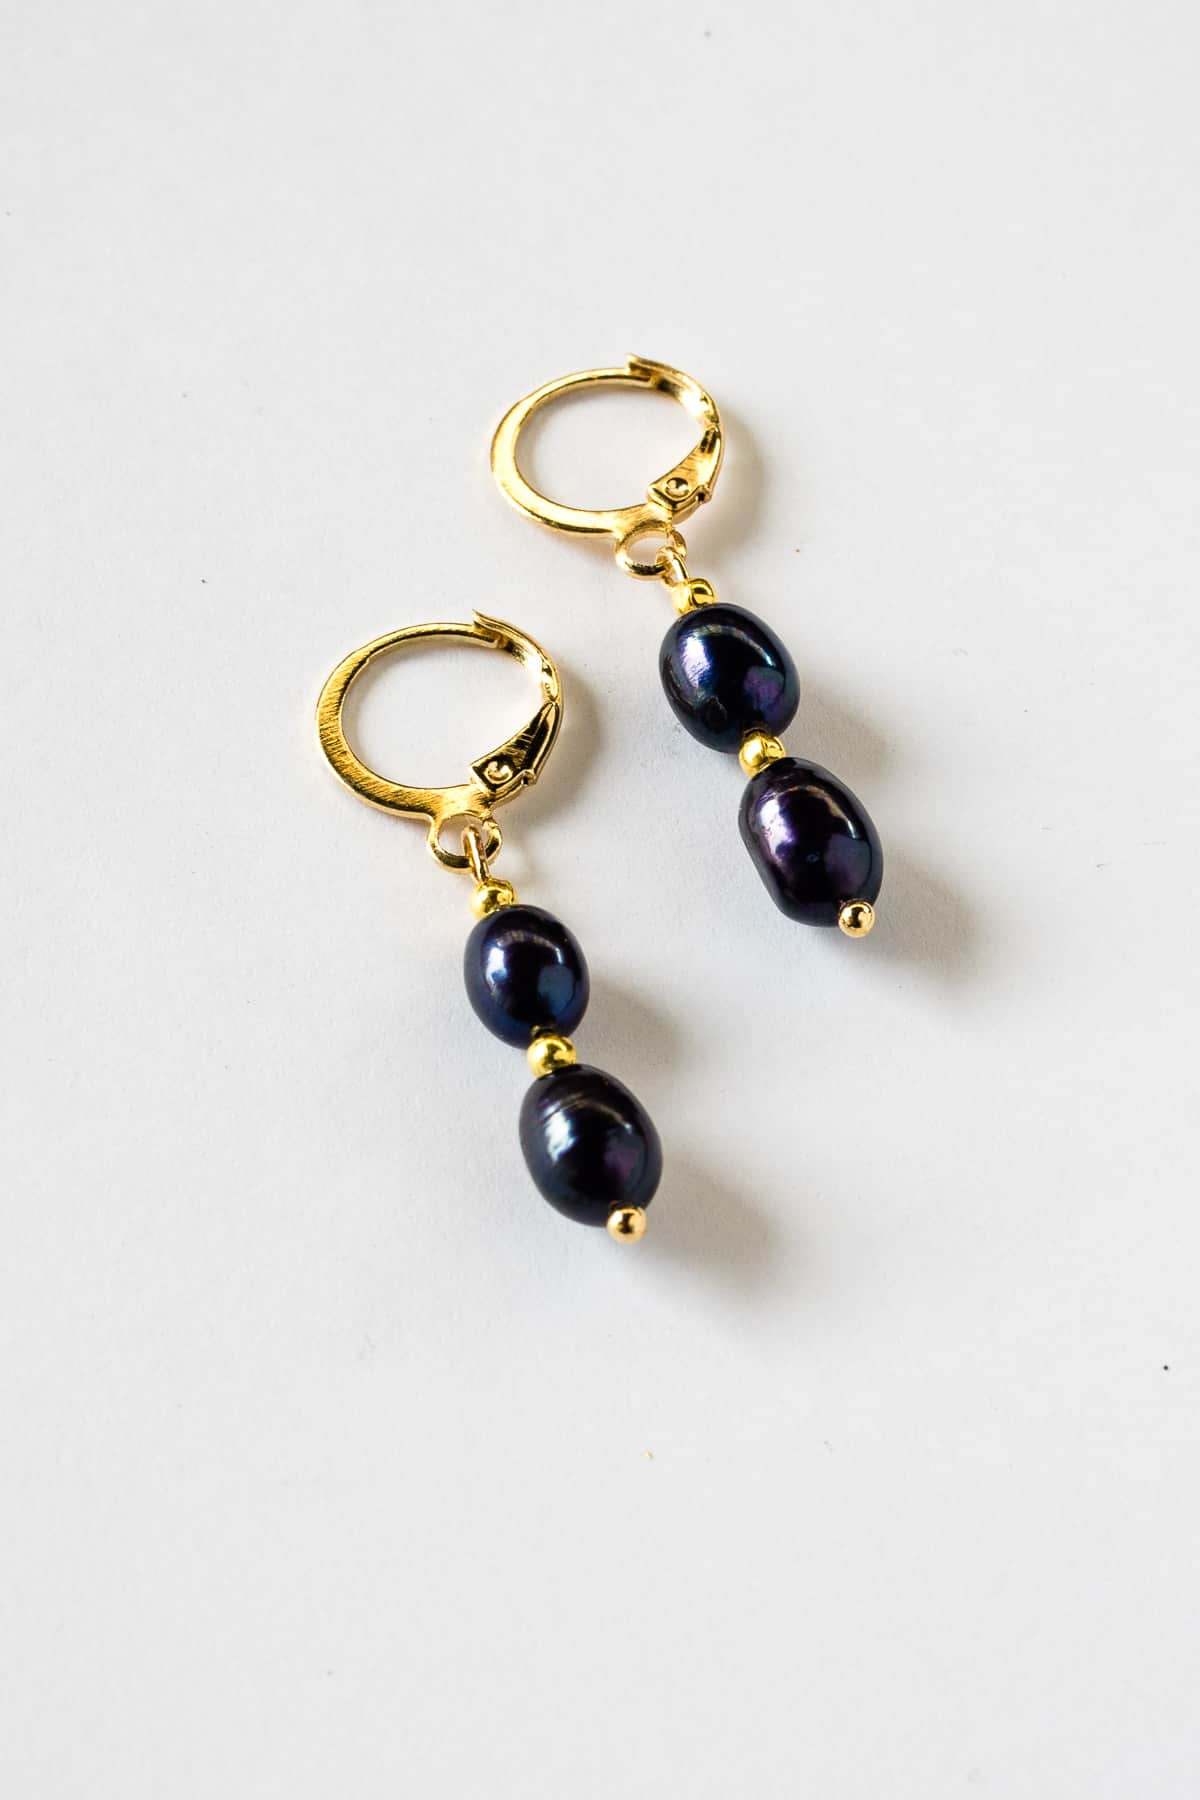 A pair of blue pearl earrings in gold lever back hoop.